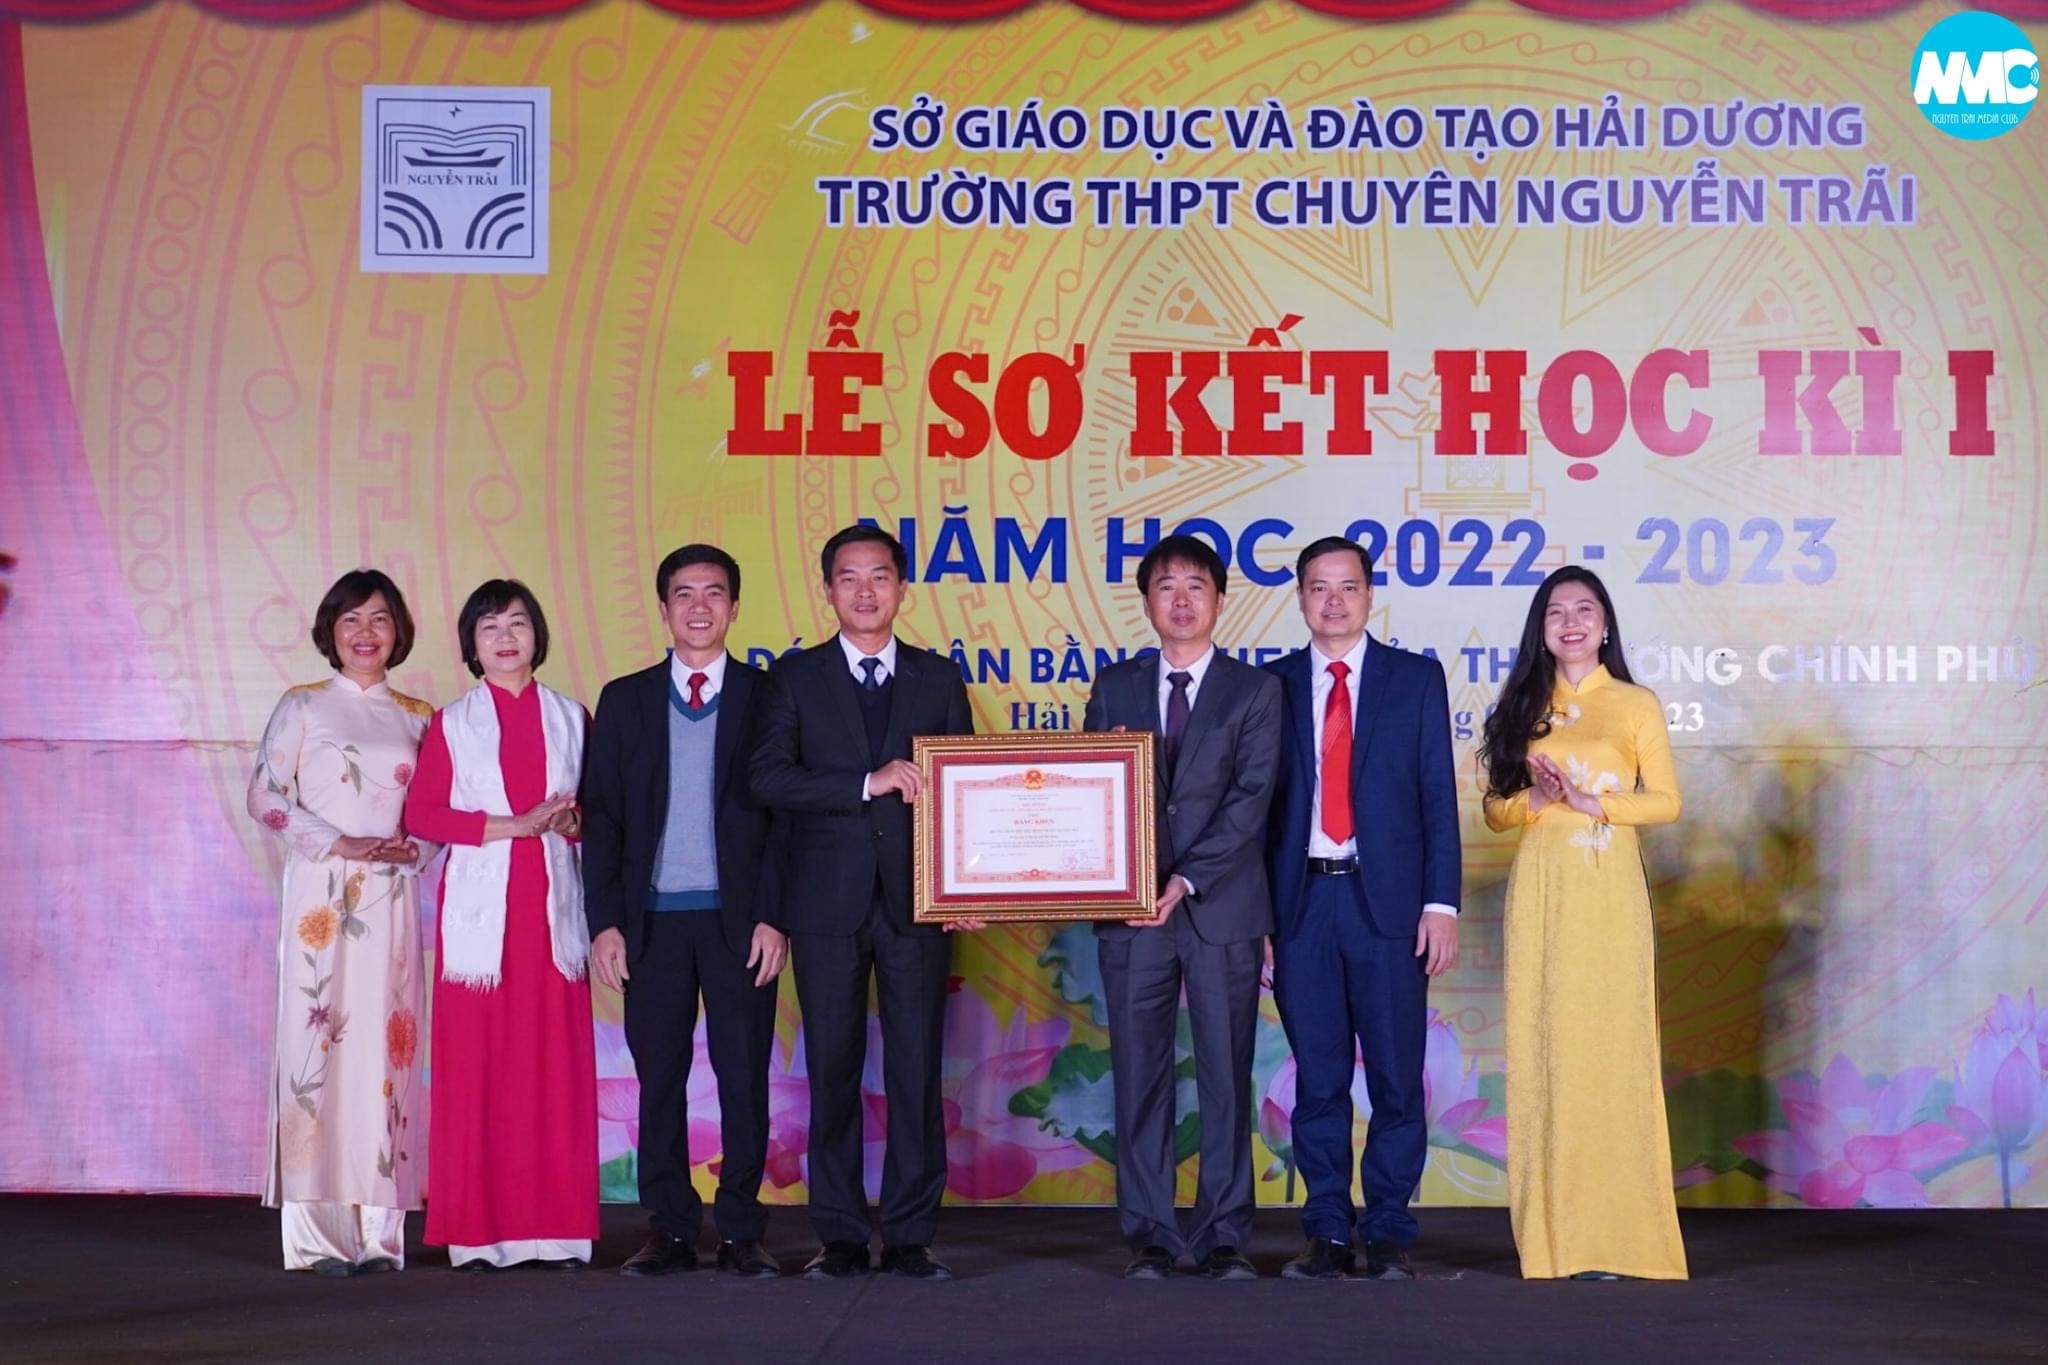 Trường THPT chuyên Nguyễn Trãi vinh dự đón nhận bằng khen của Thủ tướng chính phủ trong lễ sơ kết học kì I năm học 2022-2023